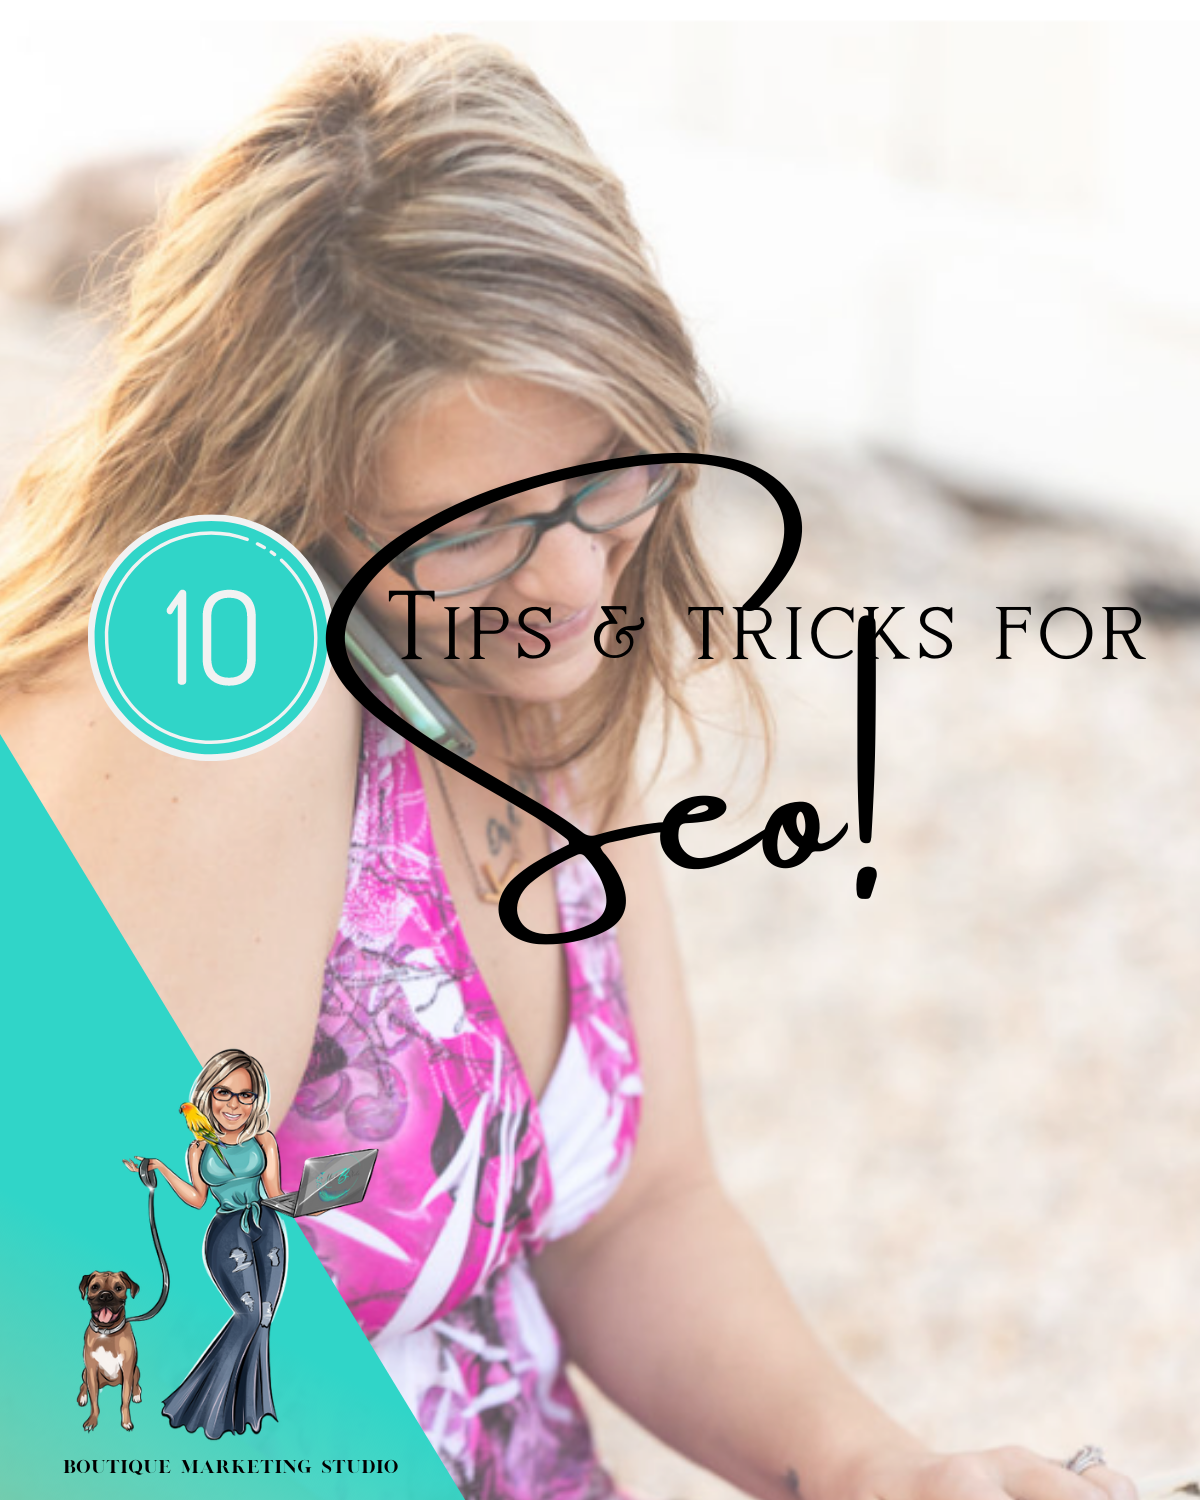 10 Tips & Tricks for SEO!